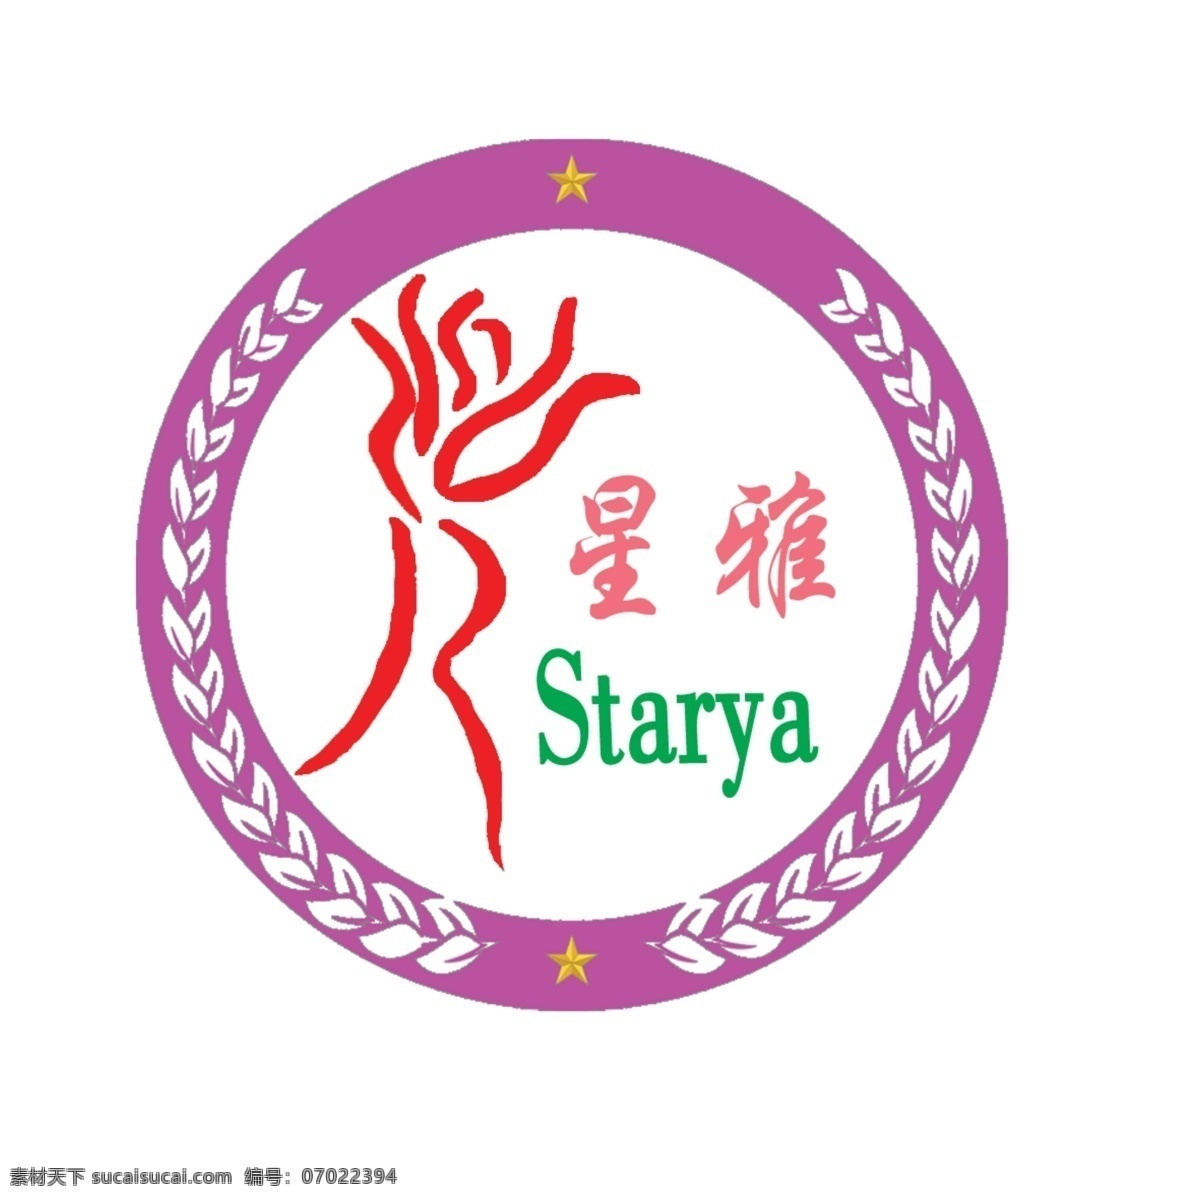 星 雅 艺术 学校 logo 星雅 培训 中心 标志图标 公共标识标志